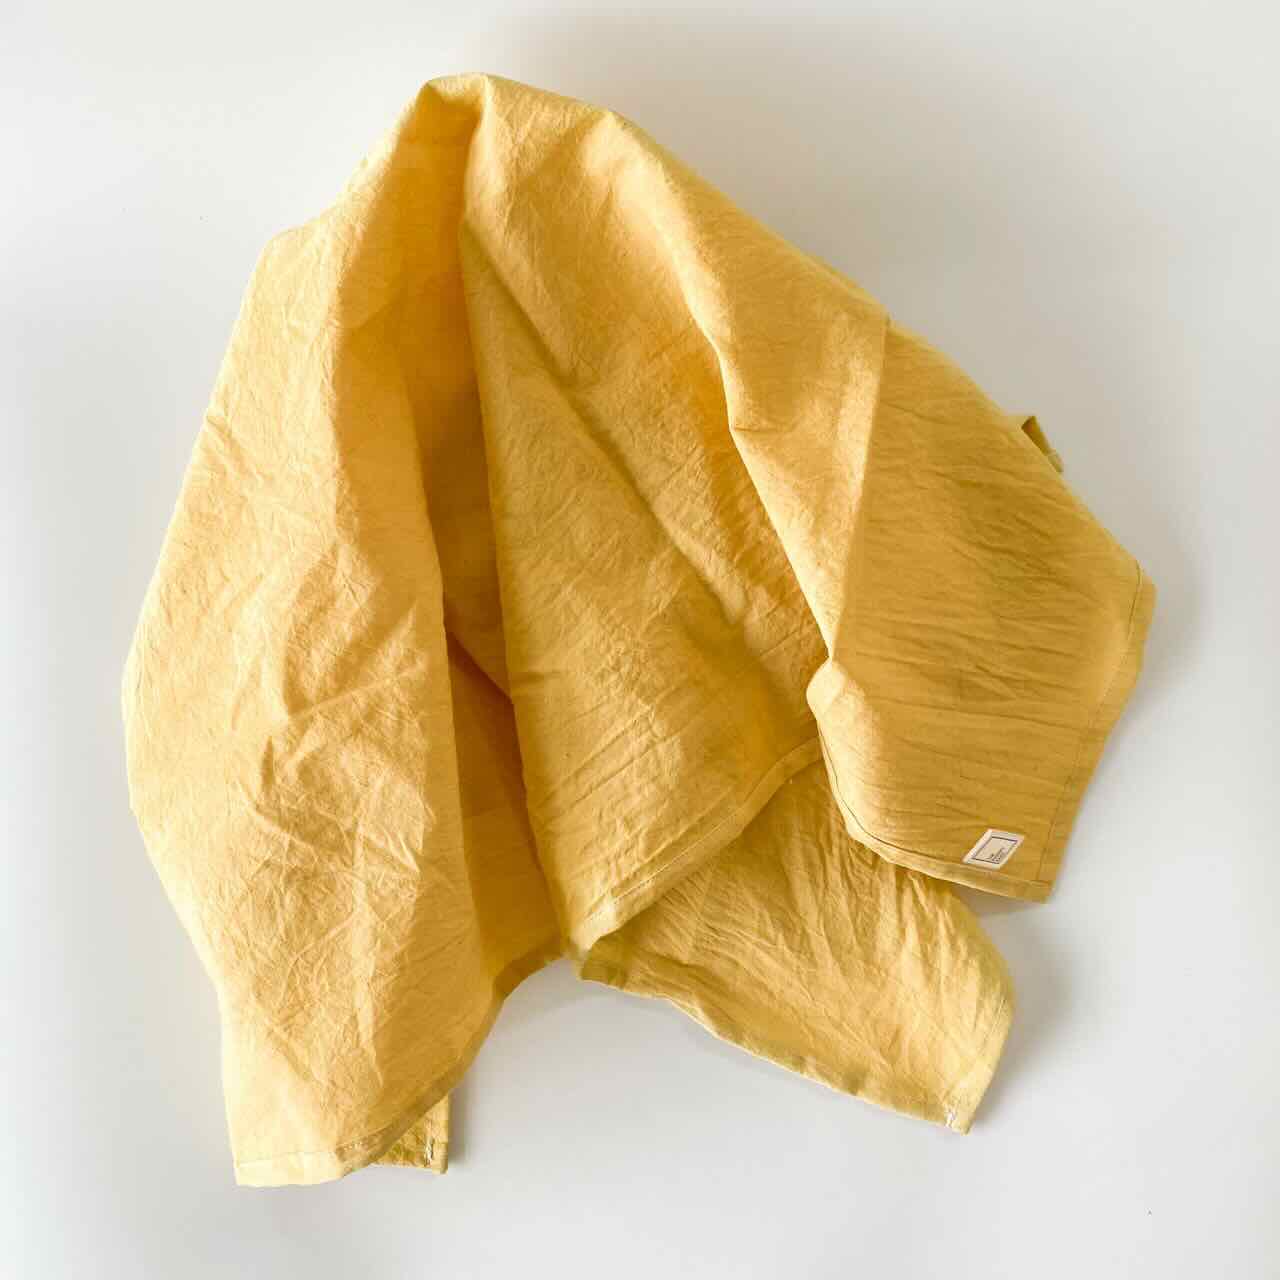 Furoshiki Reusable Gift Wrapping Cloth Large (29" x 29"): Dijon